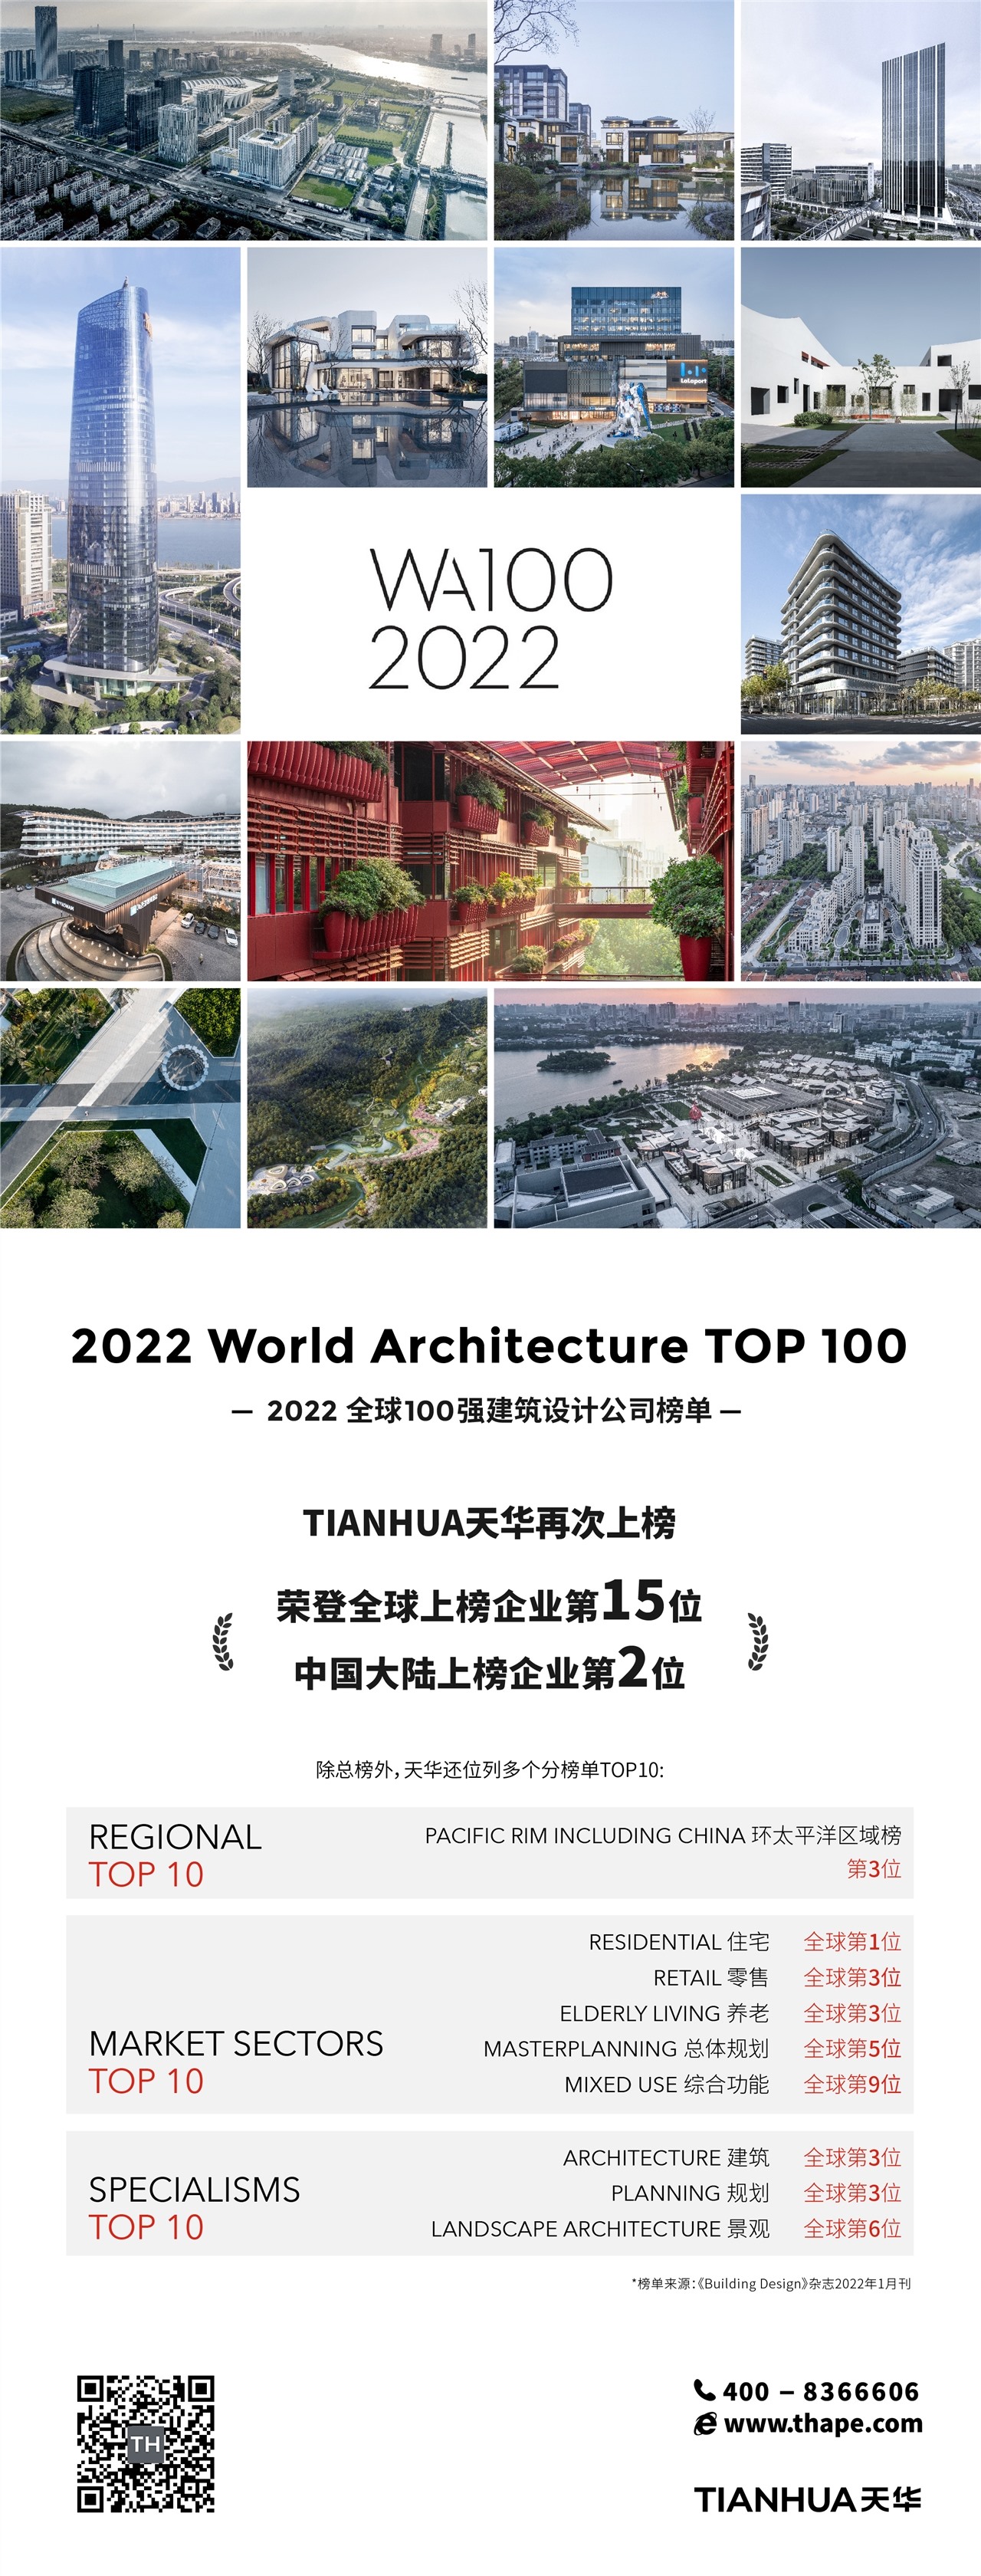 持续提升| 天华荣登2022 WA100全球100强建筑设计公司榜单15位！ - 天华